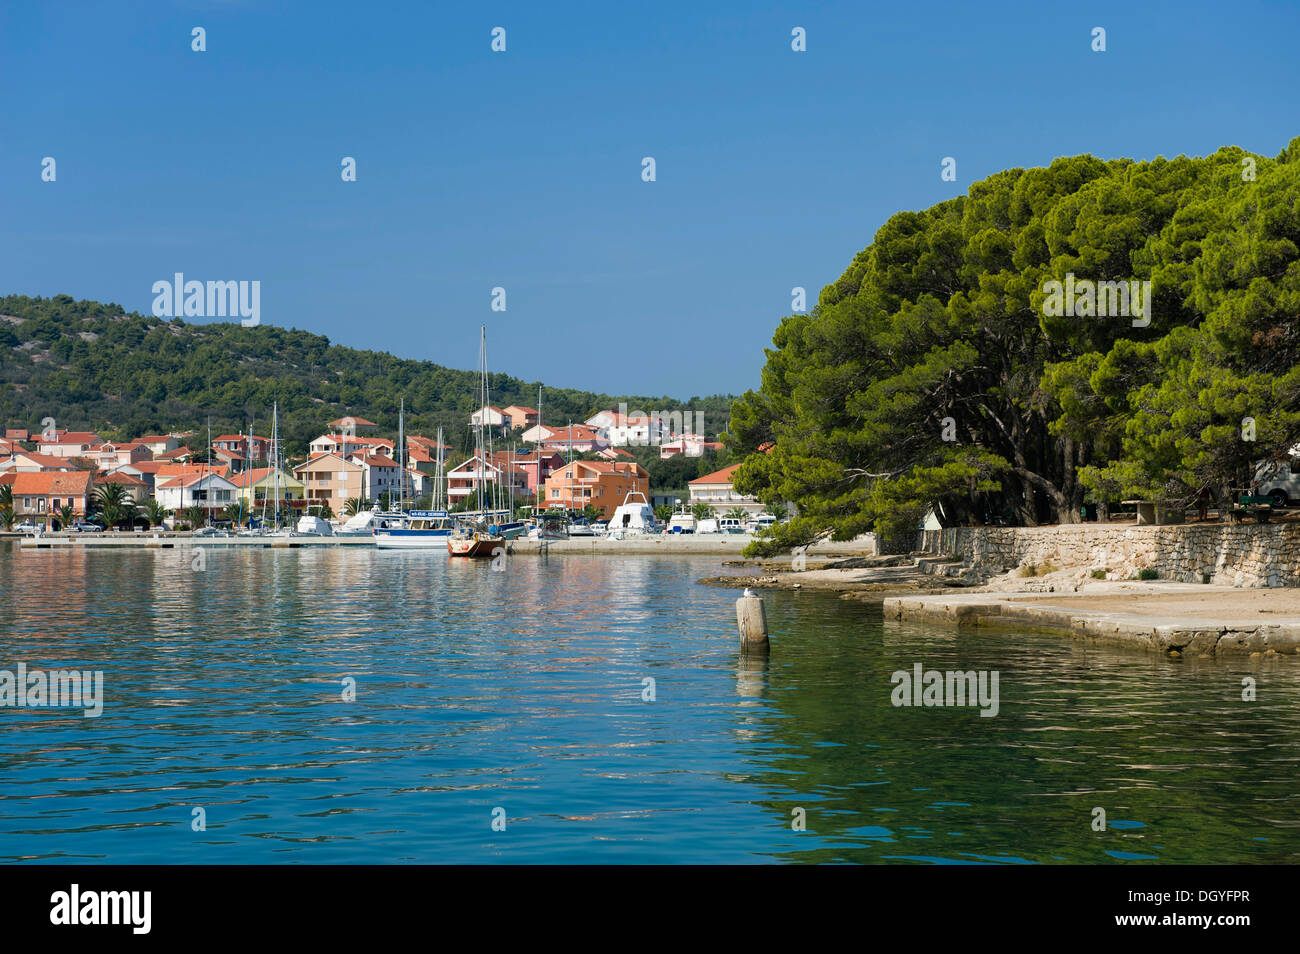 Port of Kukljica, Punta Zelena, Ugljan Island, Adriatic Sea, Zadar, Dalmatia, Croatia, Europe Stock Photo